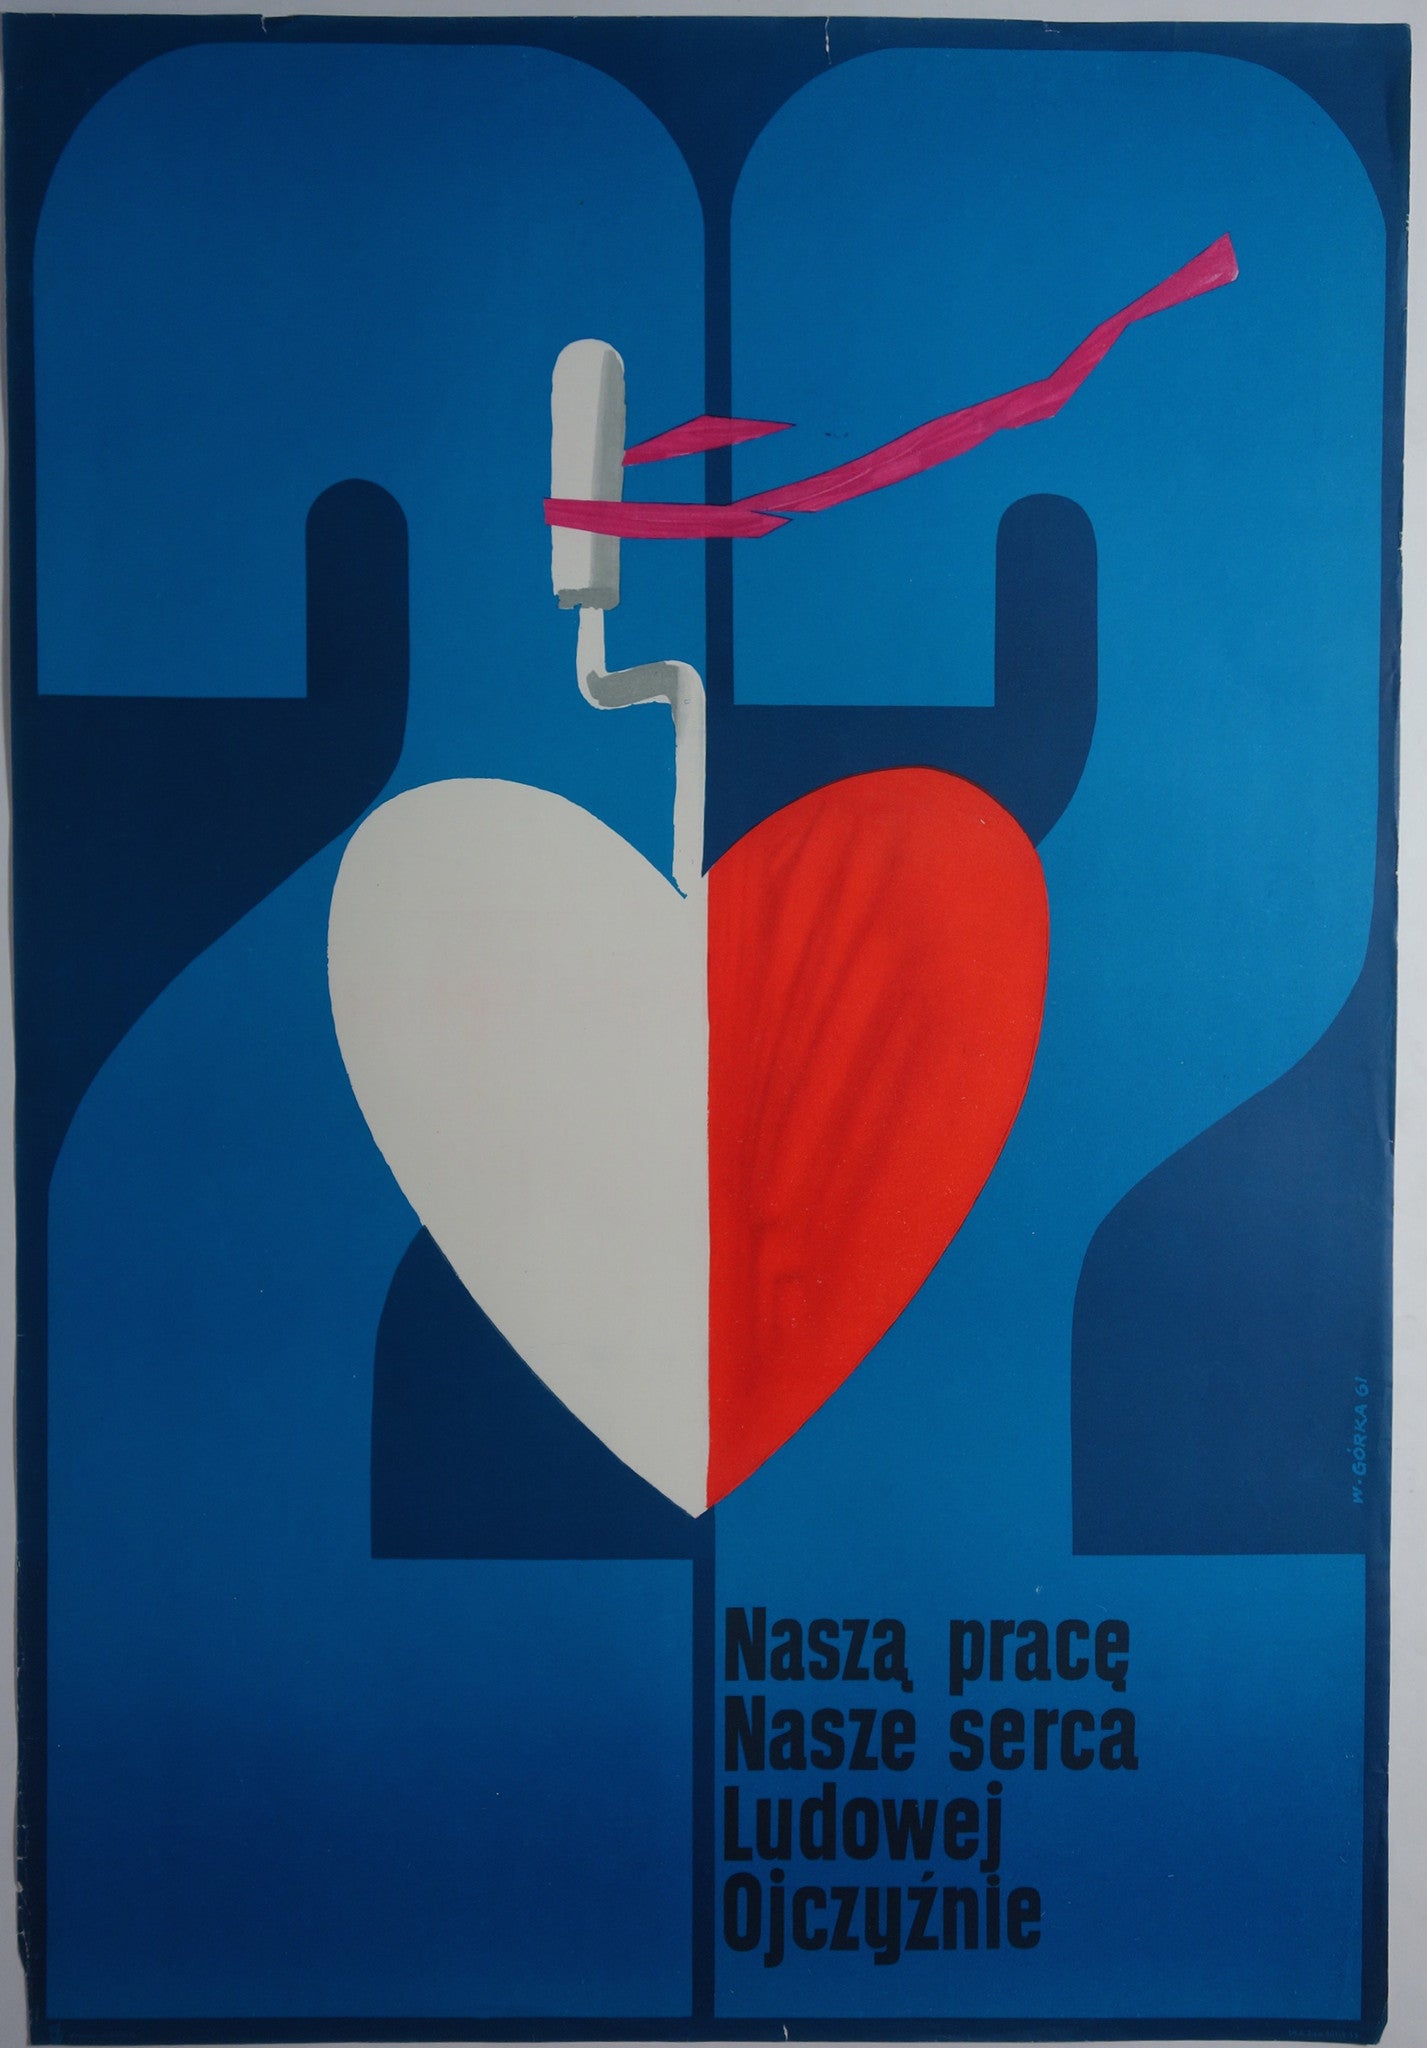 Nasza Prace Serca Ojczyznie – Poster Museum